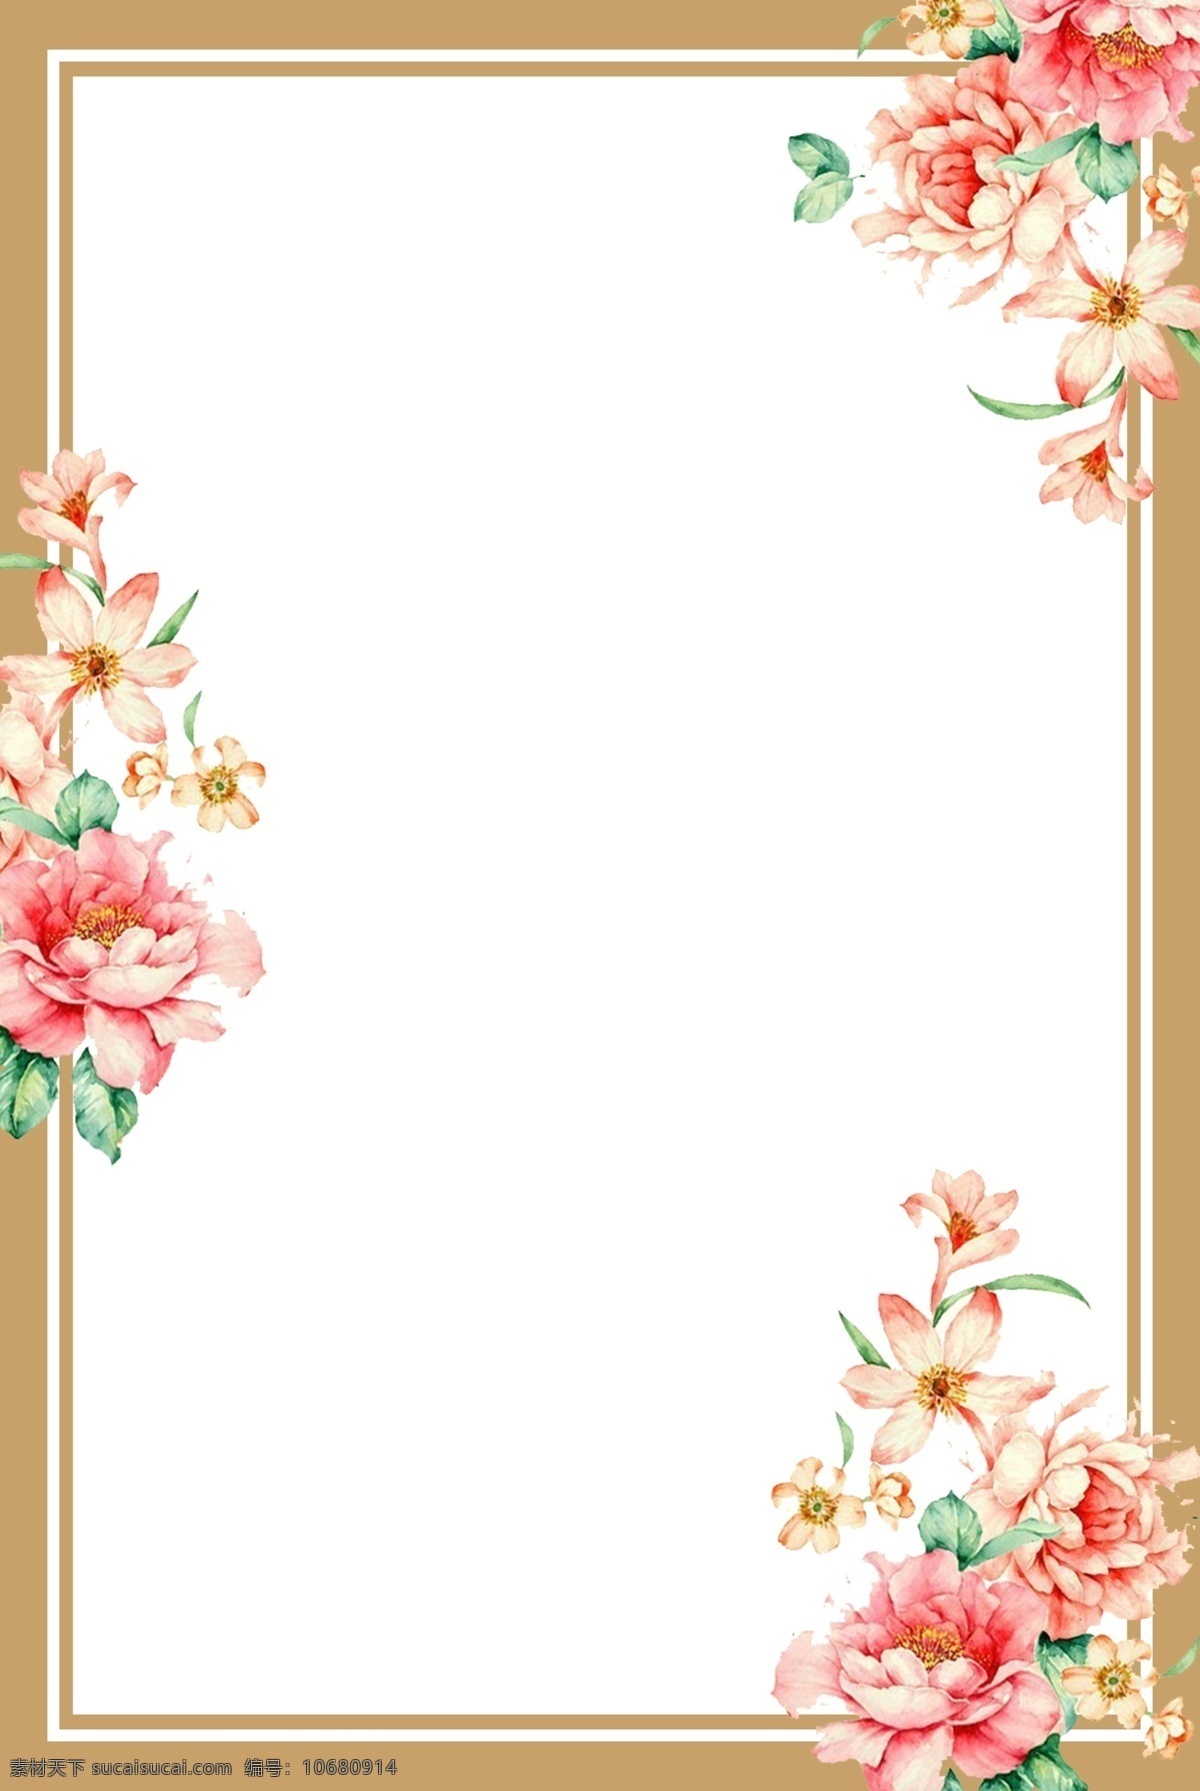 清新 简约 鲜花 素雅 花纹 边框 海报 背景 花朵 拼接